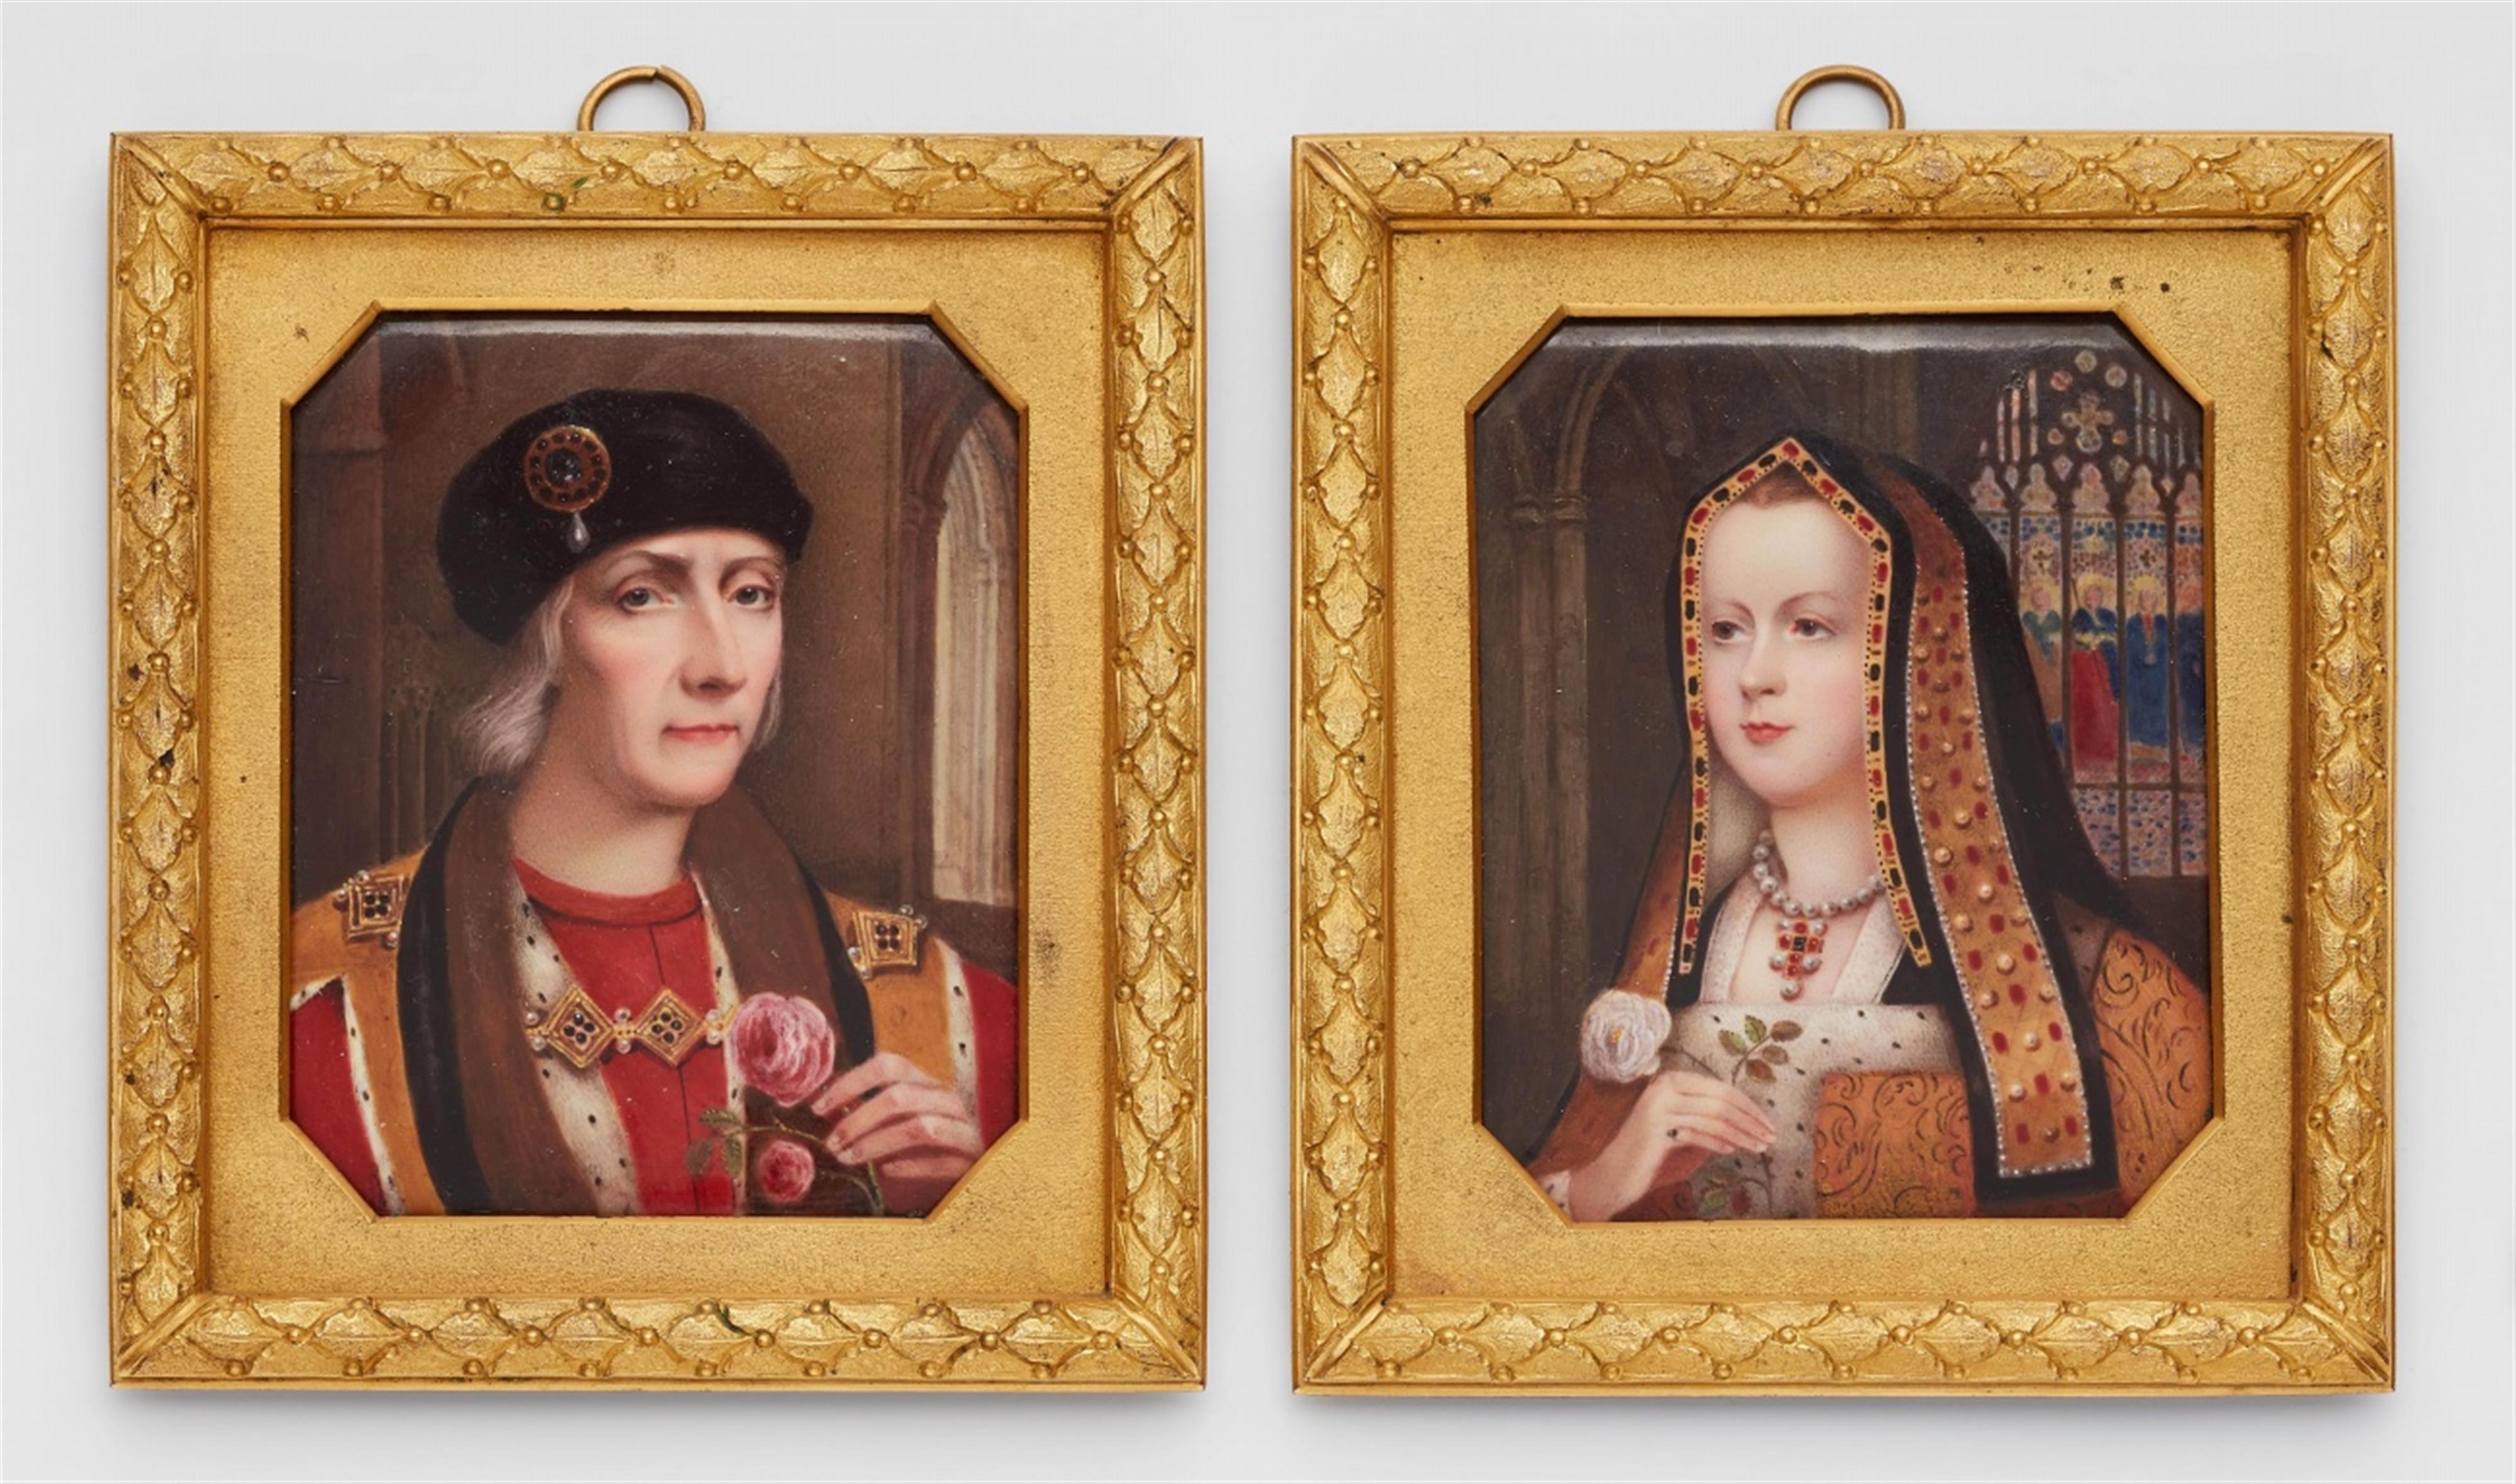 Bildnisse Henry VII und Elizabeth von England - image-1